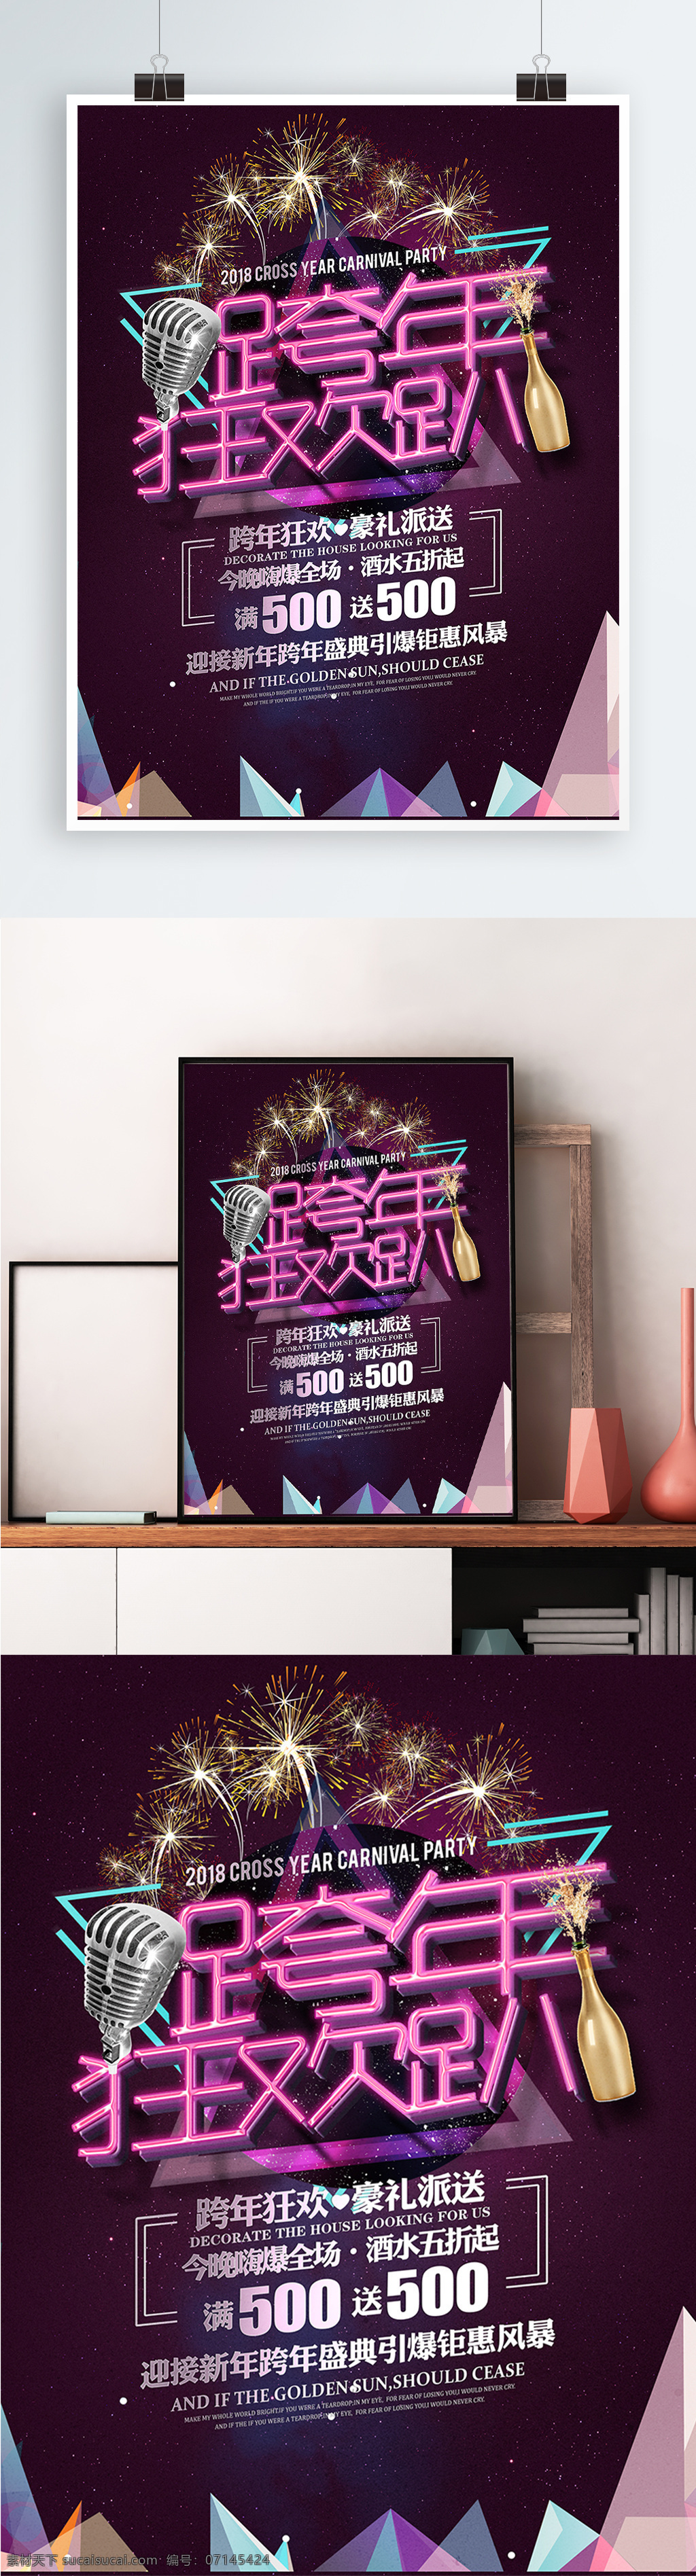 酷 炫 时尚 跨 年 狂欢 派对 盛典 活动 宣传海报 展板 促销 海报 酒吧 酷炫 跨年 宣传 夜店